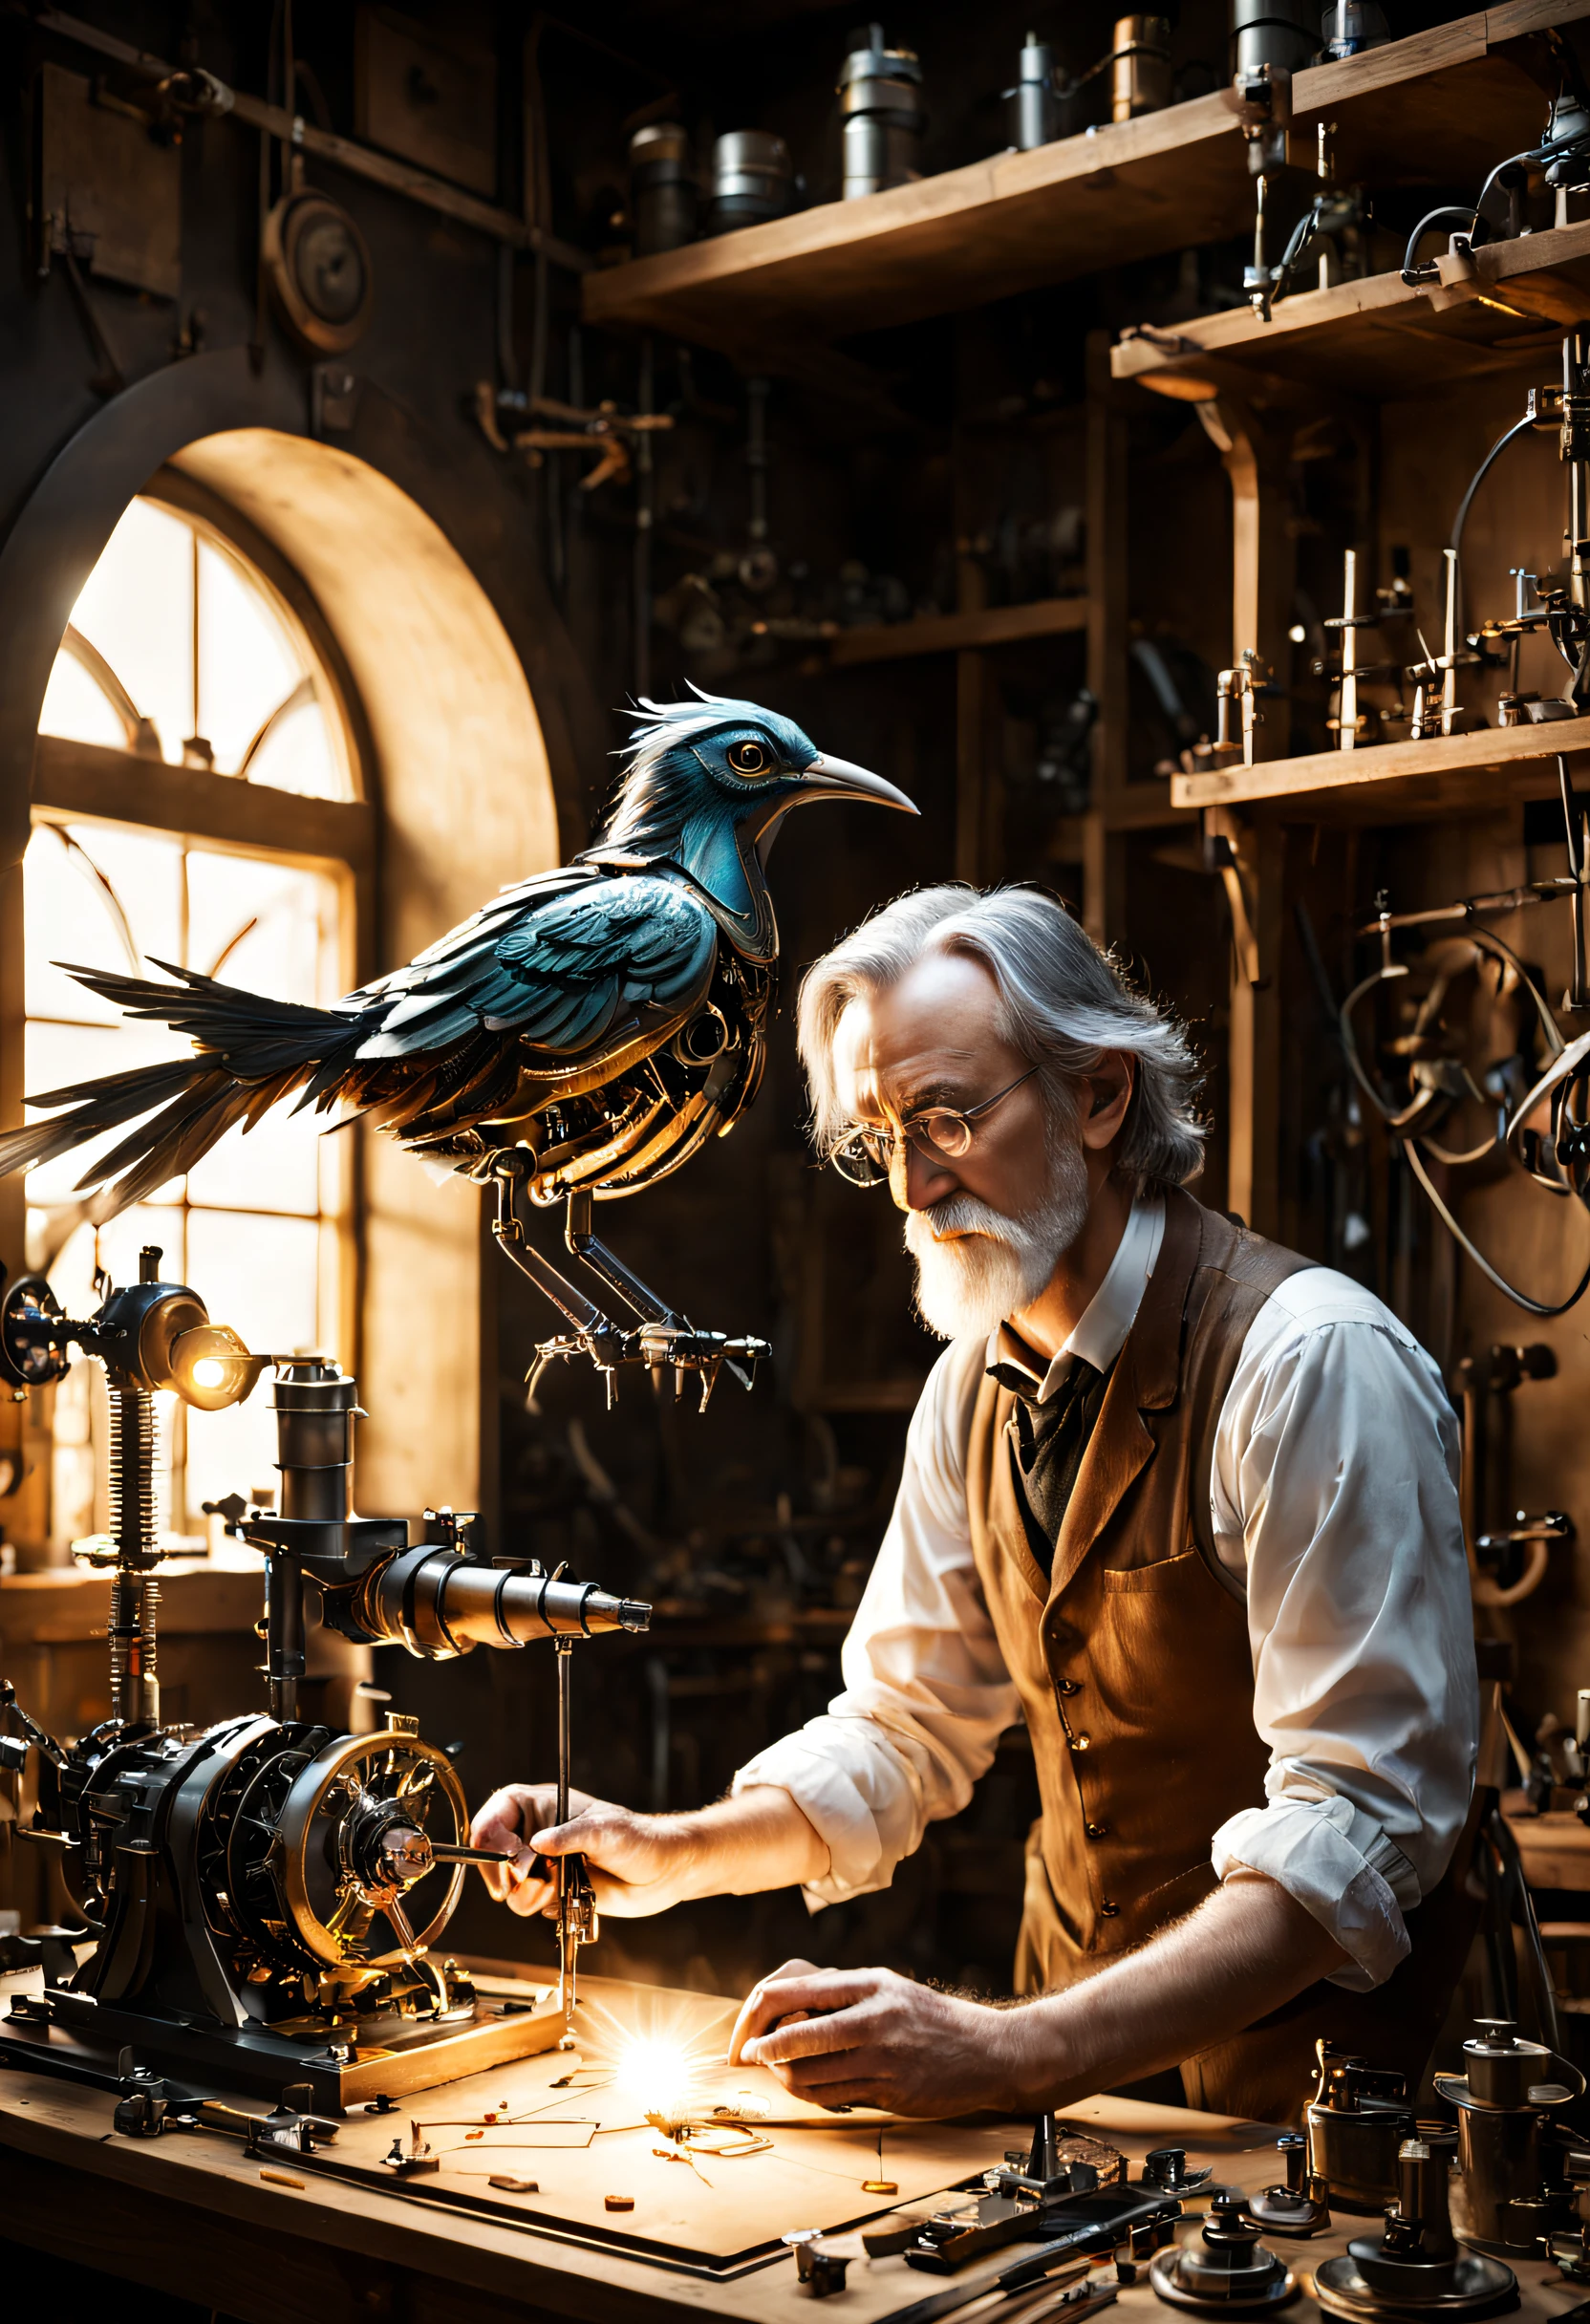 작업장에서 기계 새를 만드는 과학자. 그는 마지막 부분을 집어넣고 있다. 톨킨 스타일의 마법 같은 분위기.